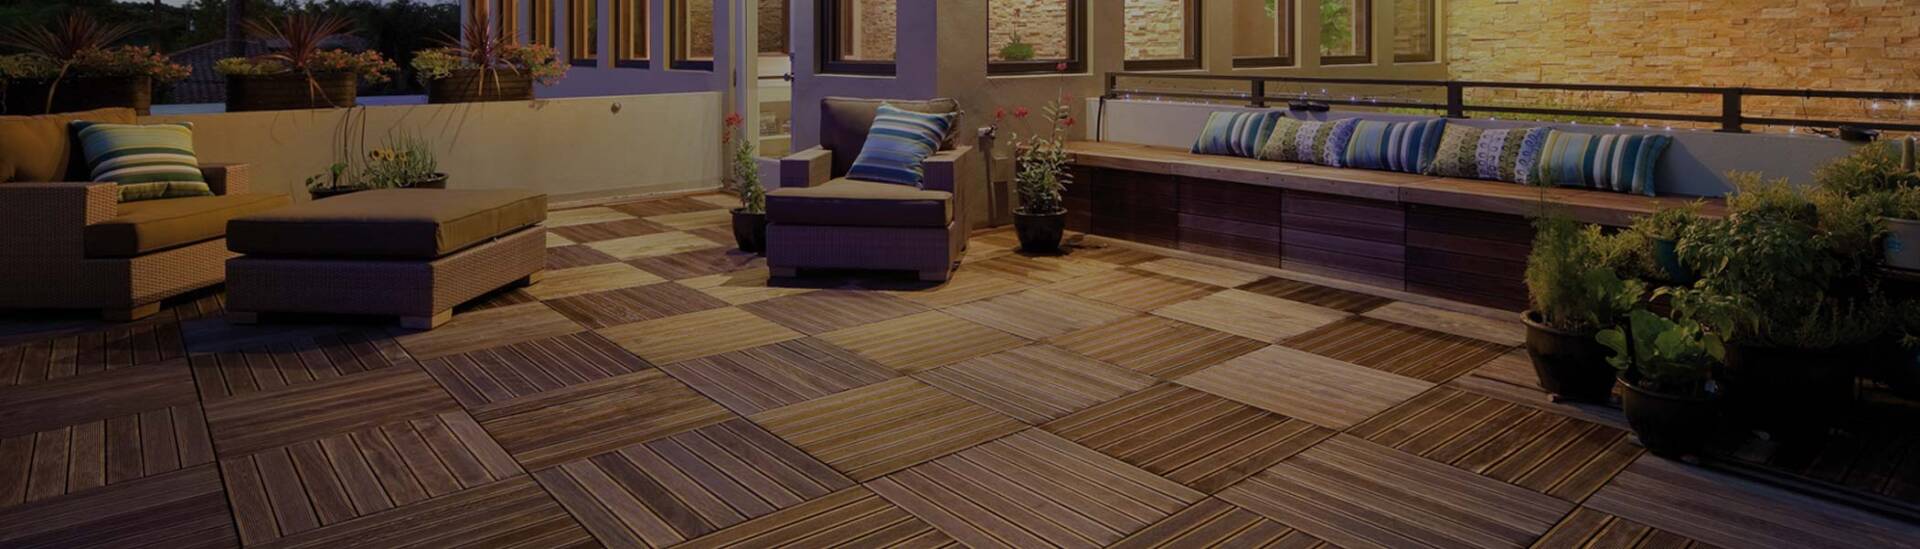 Cozy Parquet Wood Tile Rooftop Deck